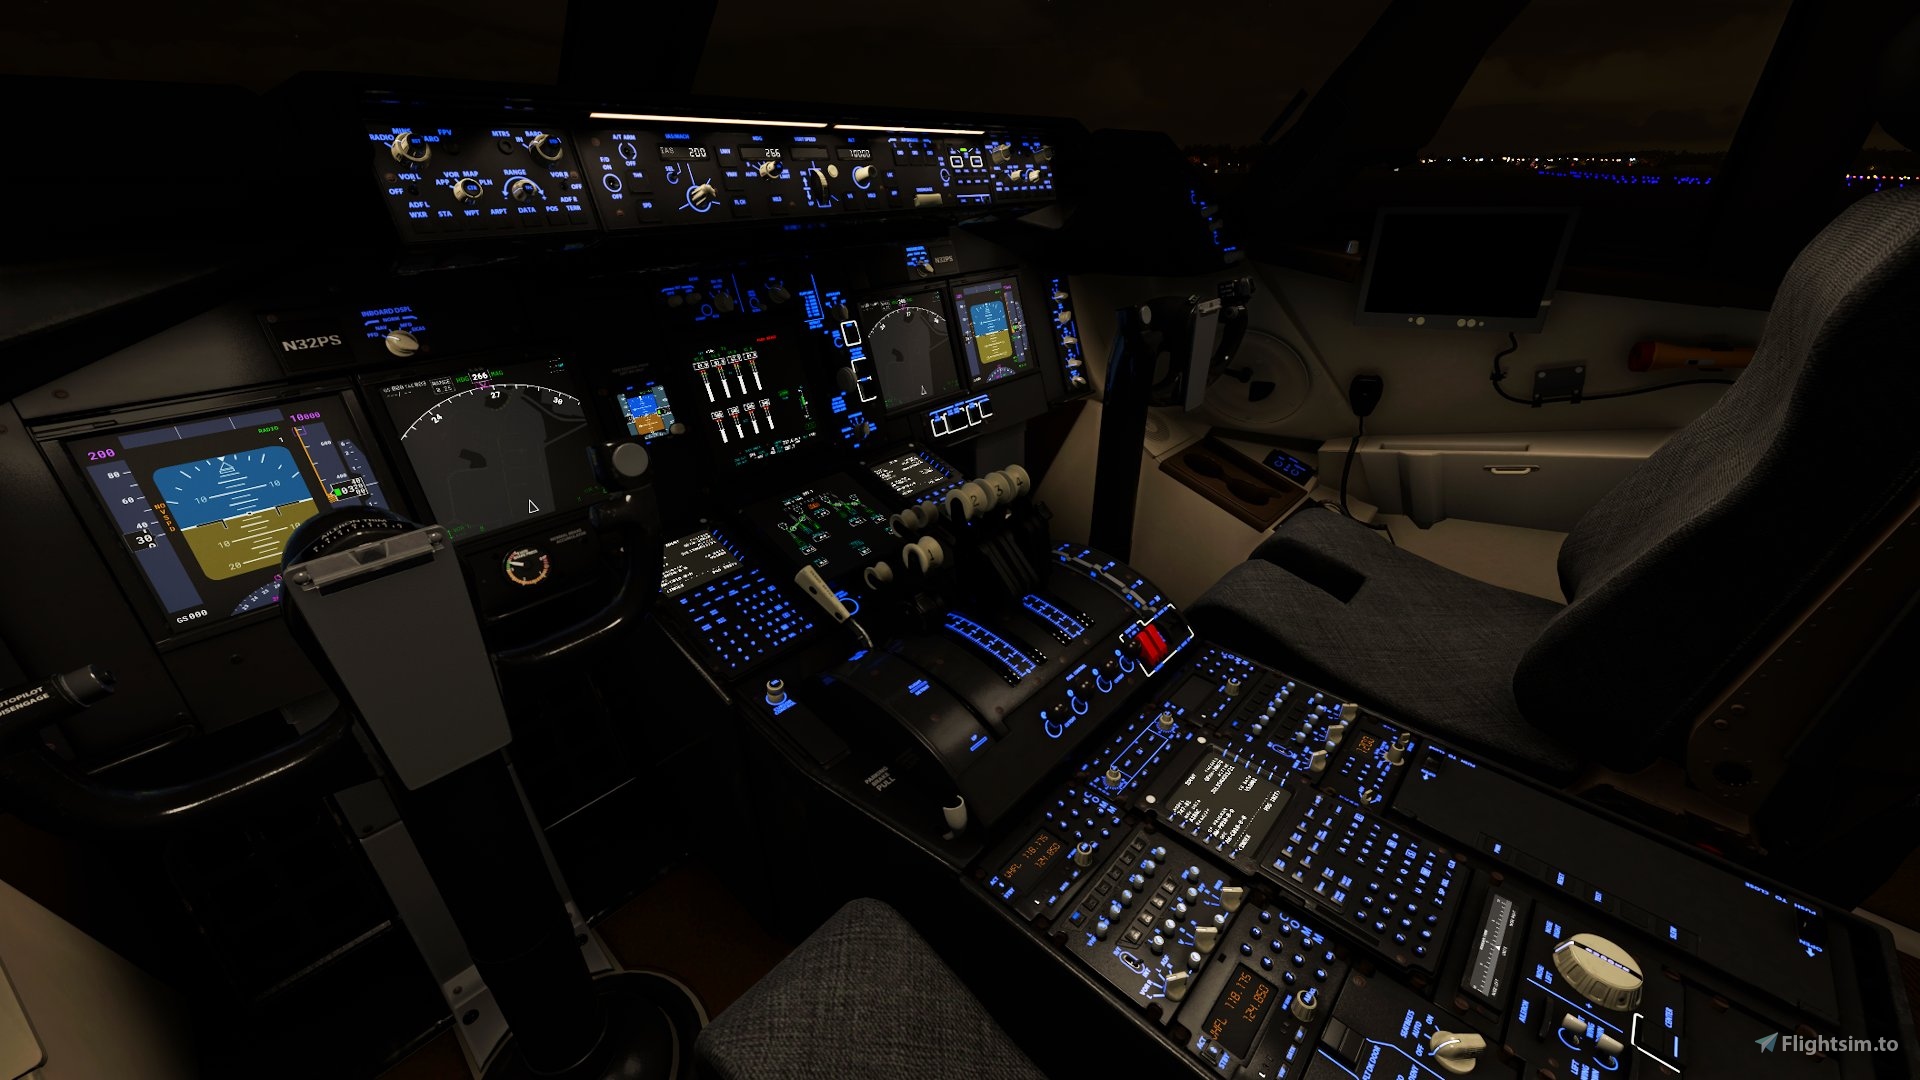 pmdg 777 cockpit lights